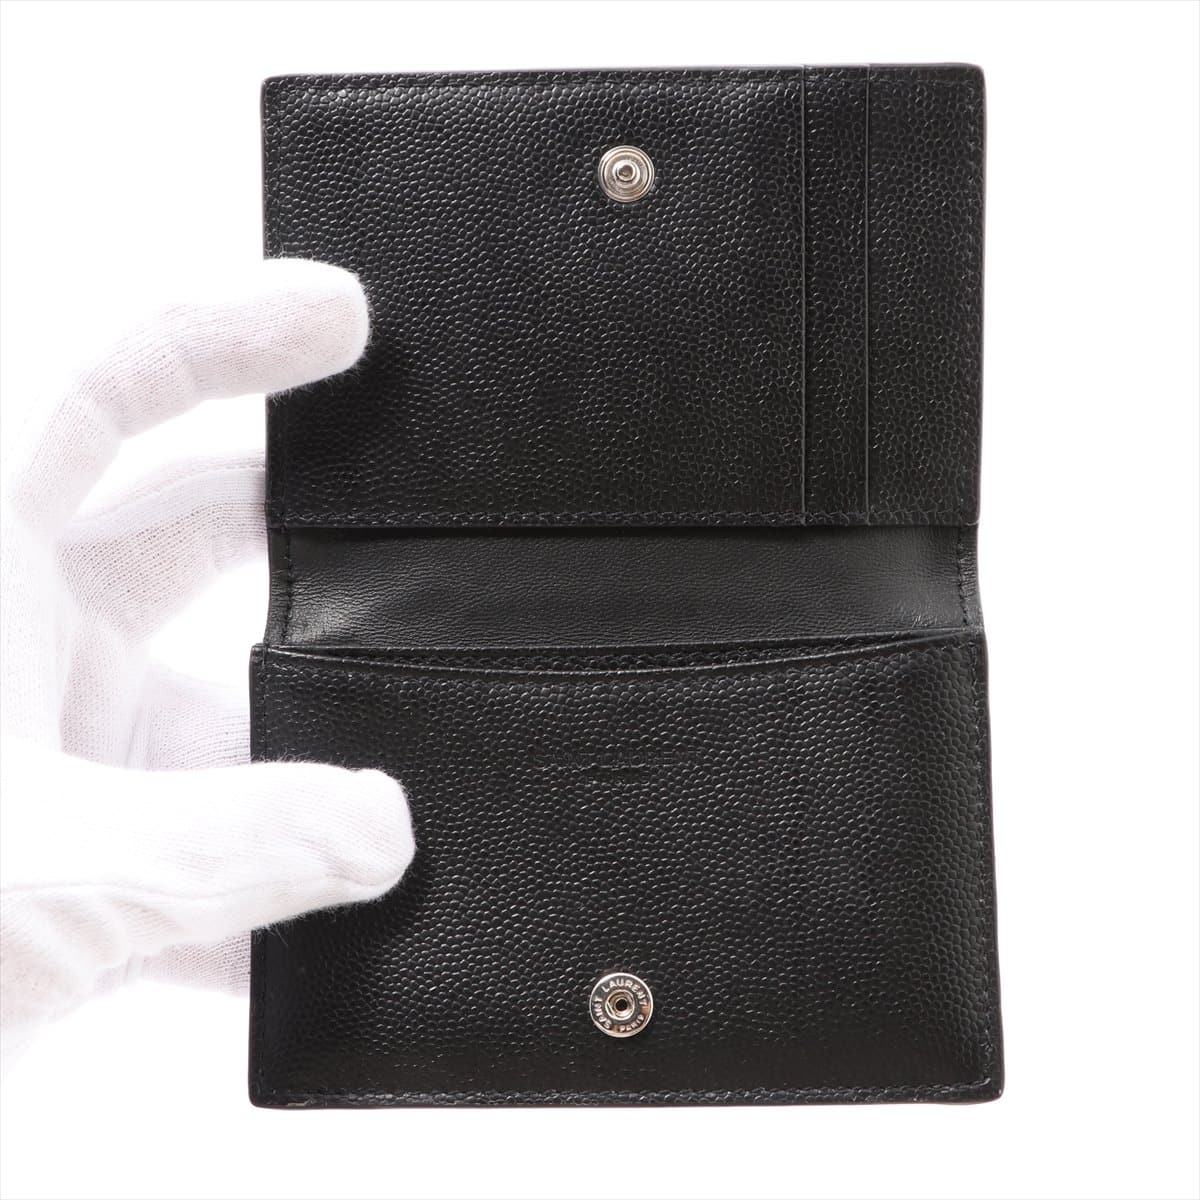 Saint Laurent Paris Leather Card case Black Card case